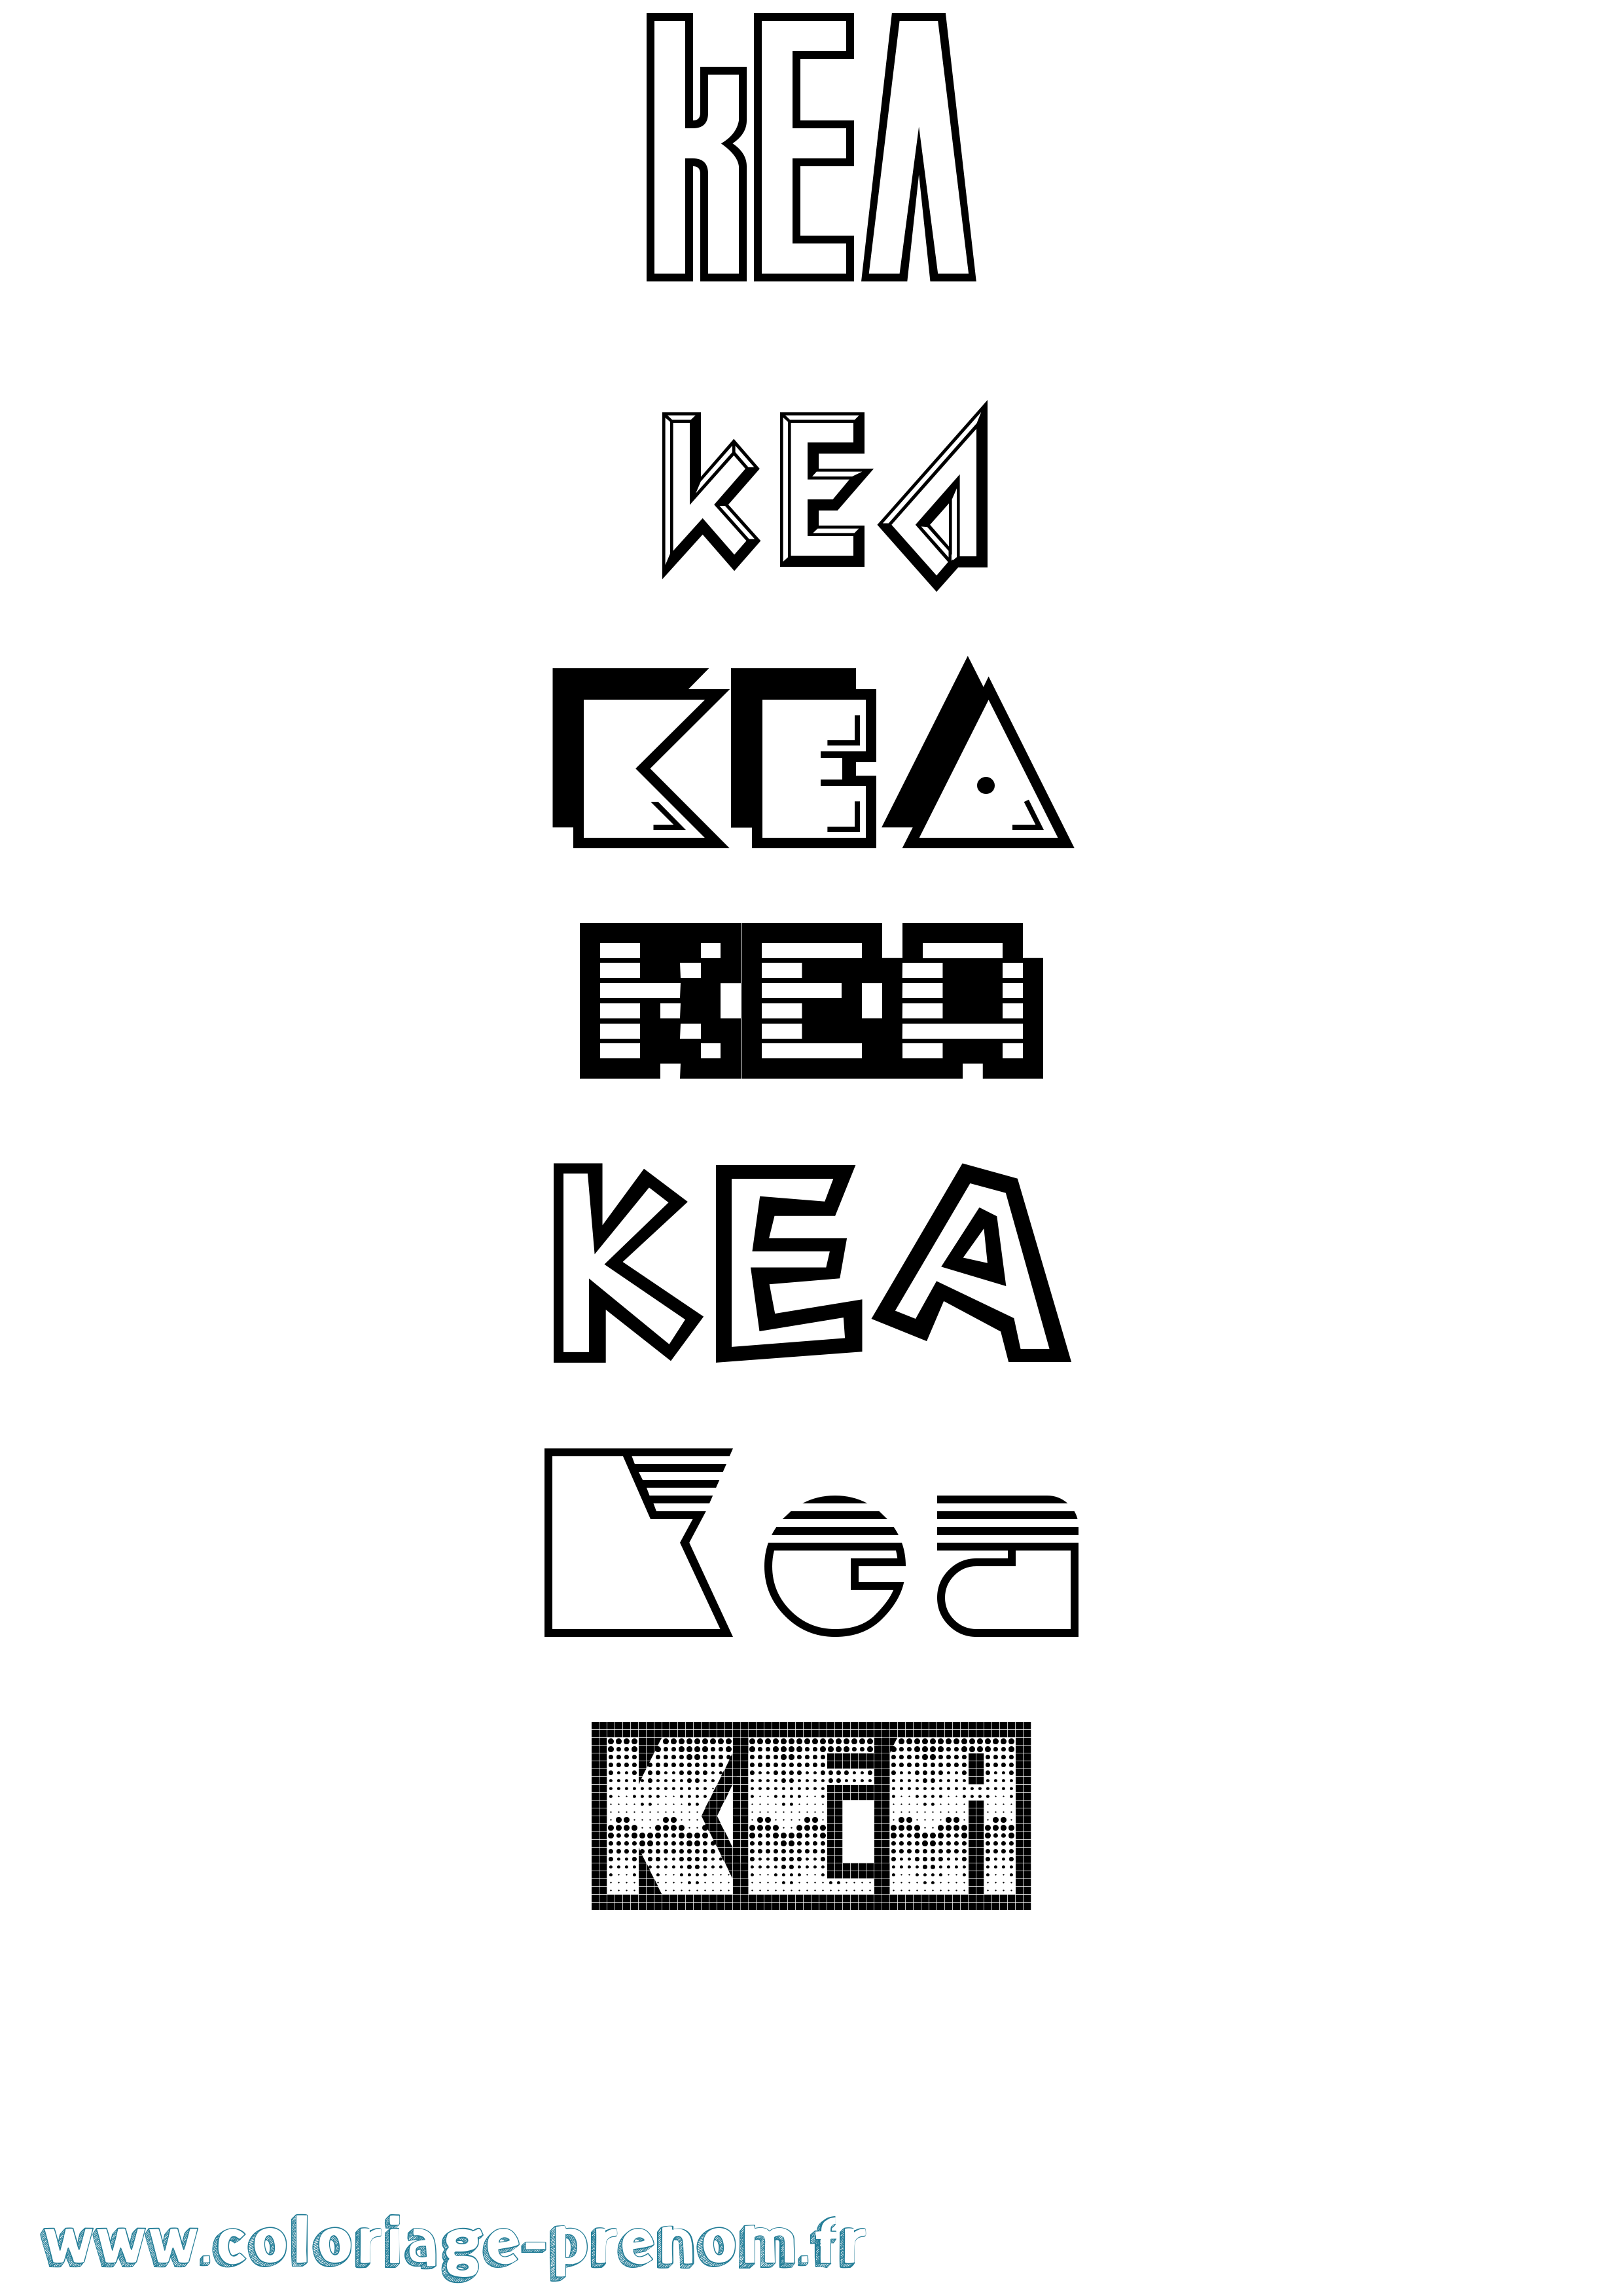 Coloriage prénom Kea Jeux Vidéos